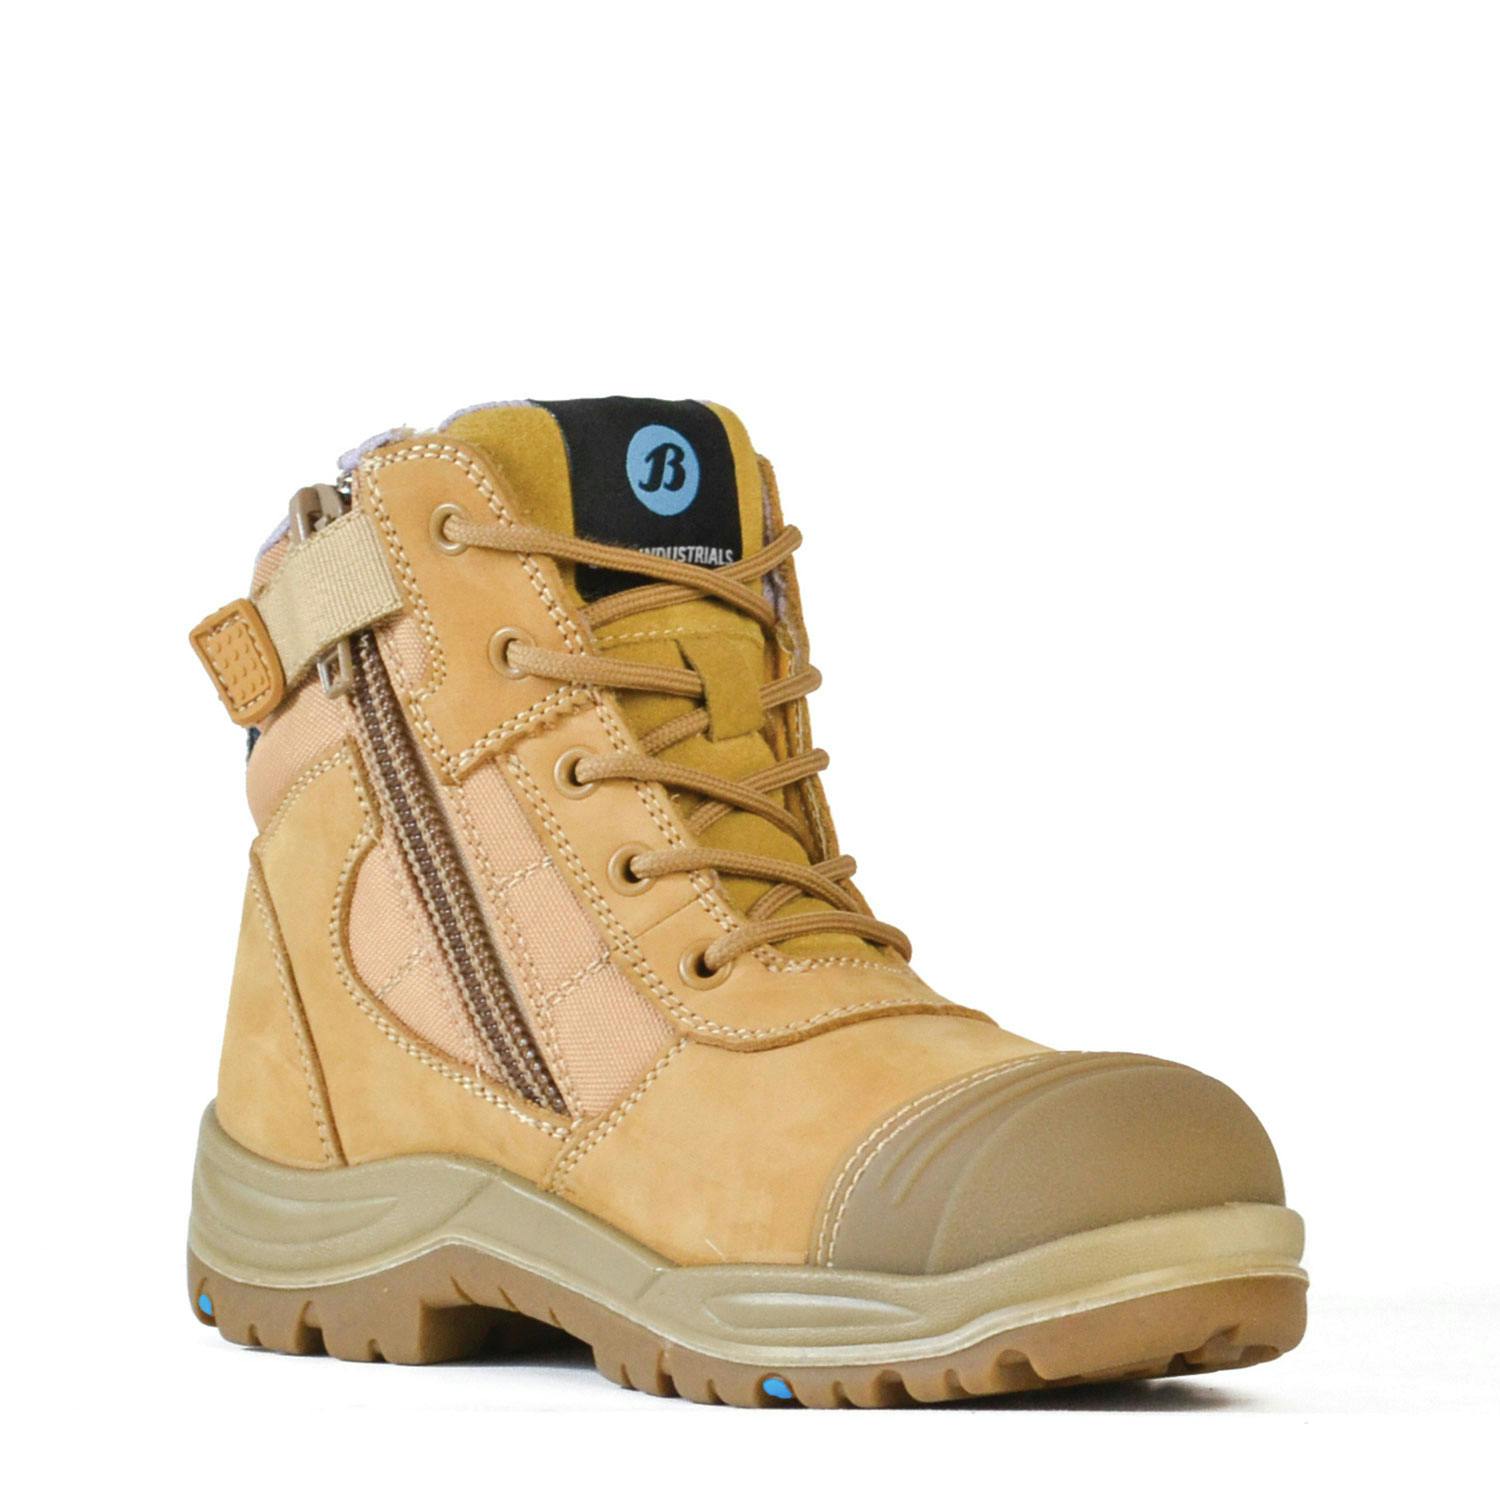 Bata Industrials Dakota - Ladies Wheat Zip Sided Safety Boots 